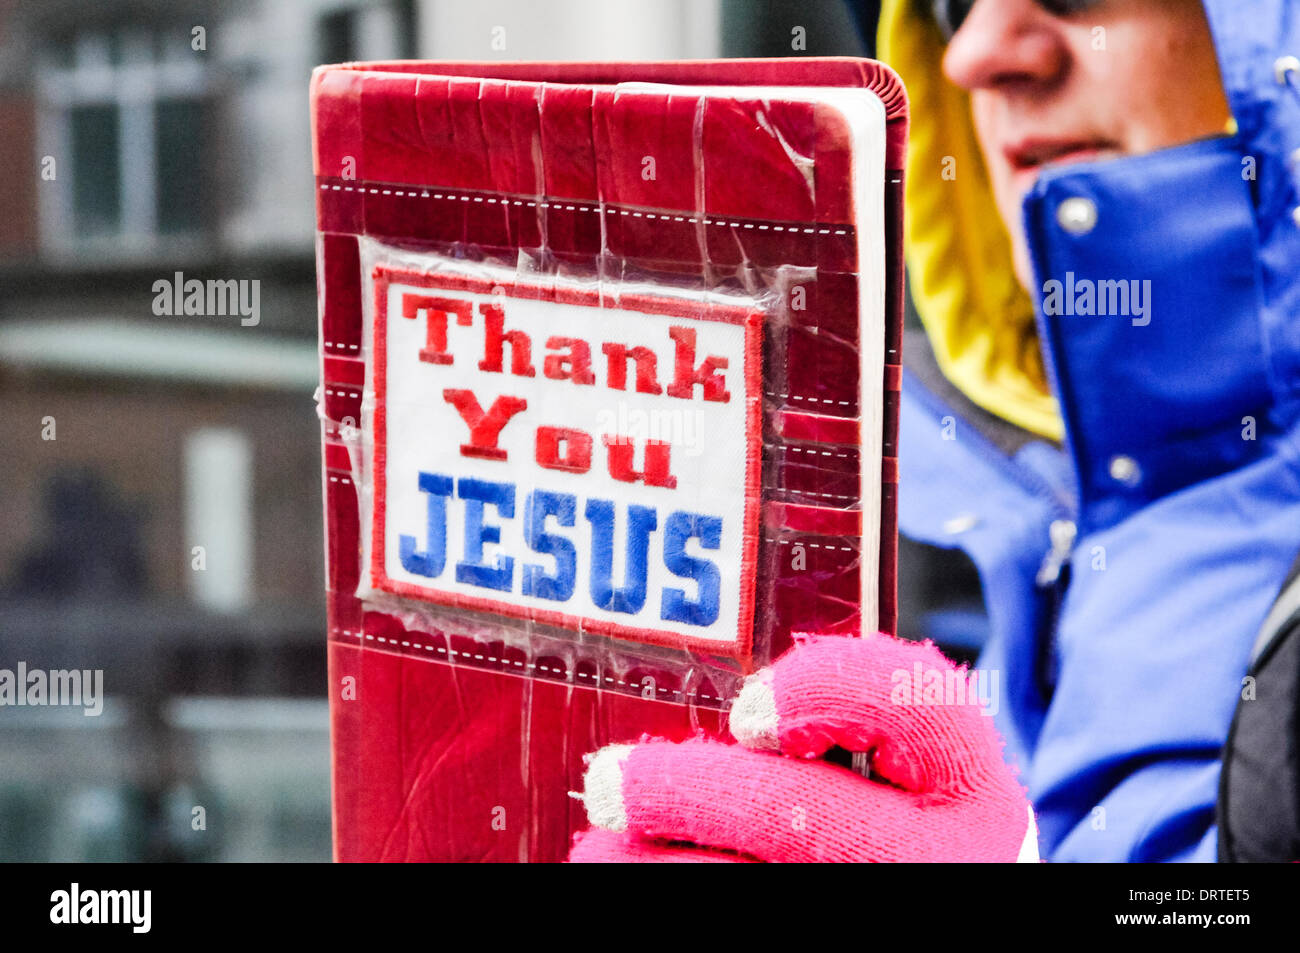 Belfast, Nordirland, 1. Februar 2014 - eine christliche Frau hält, eine Bibel mit "Thank You Jesus" auf der Titelseite wie sie, eine Menschenmenge Predigt um Kredit zu protestieren: Stephen Barnes/Alamy Live News Stockfoto